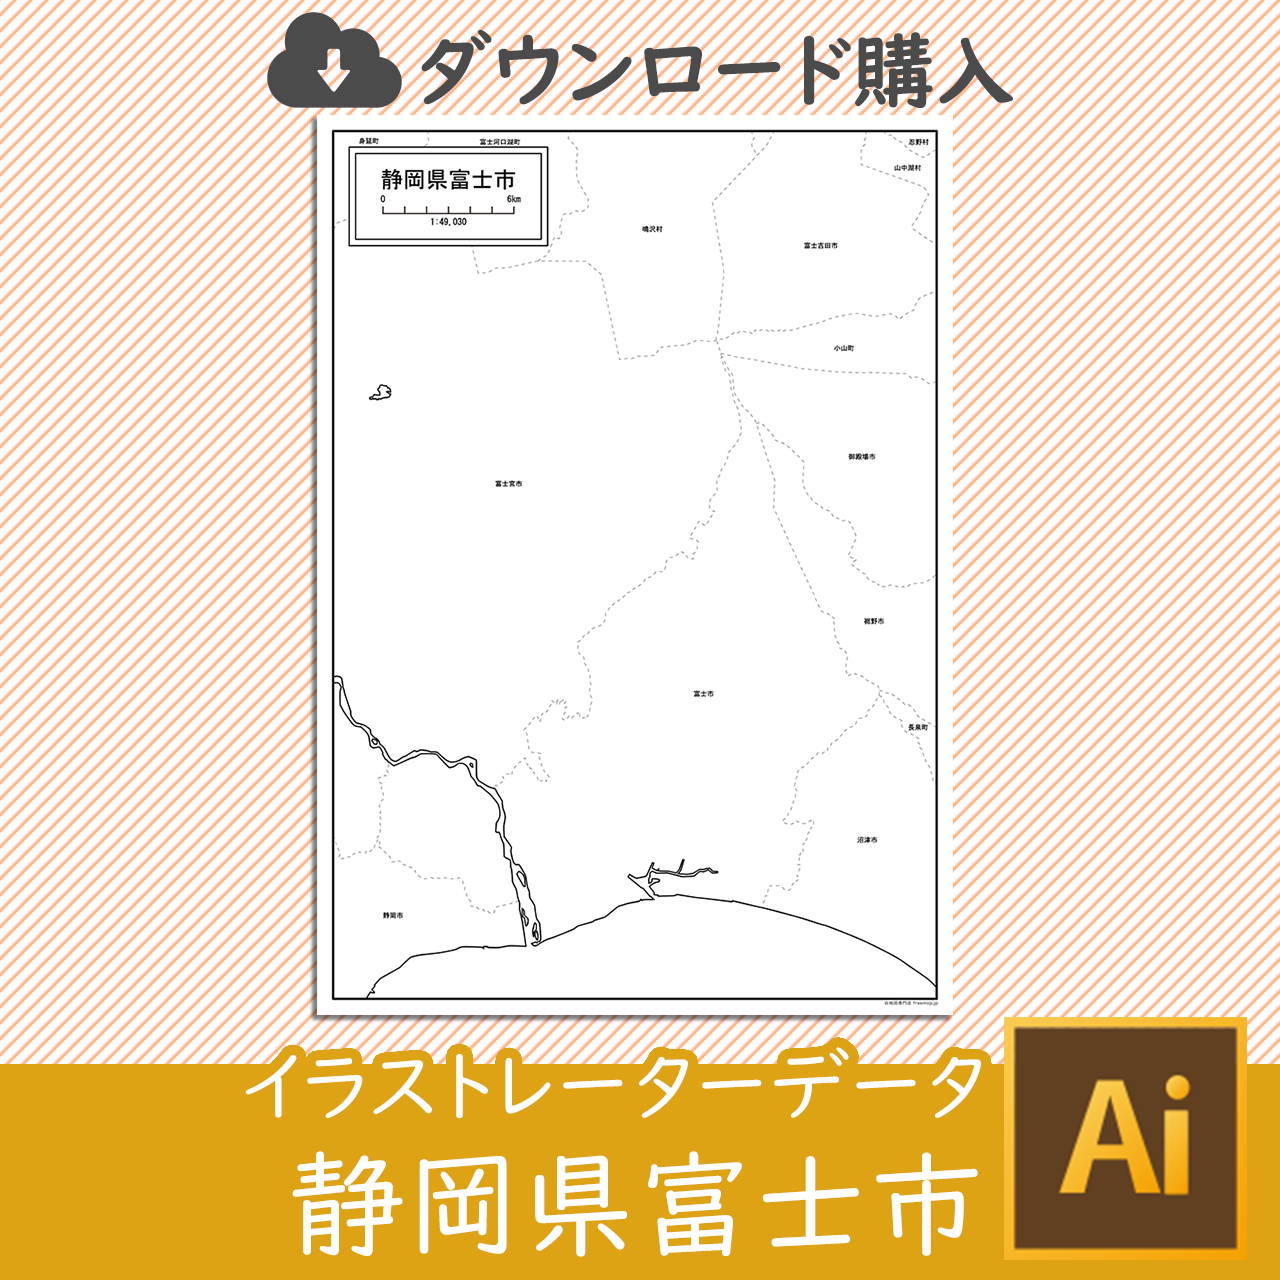 富士市のaiデータのサムネイル画像